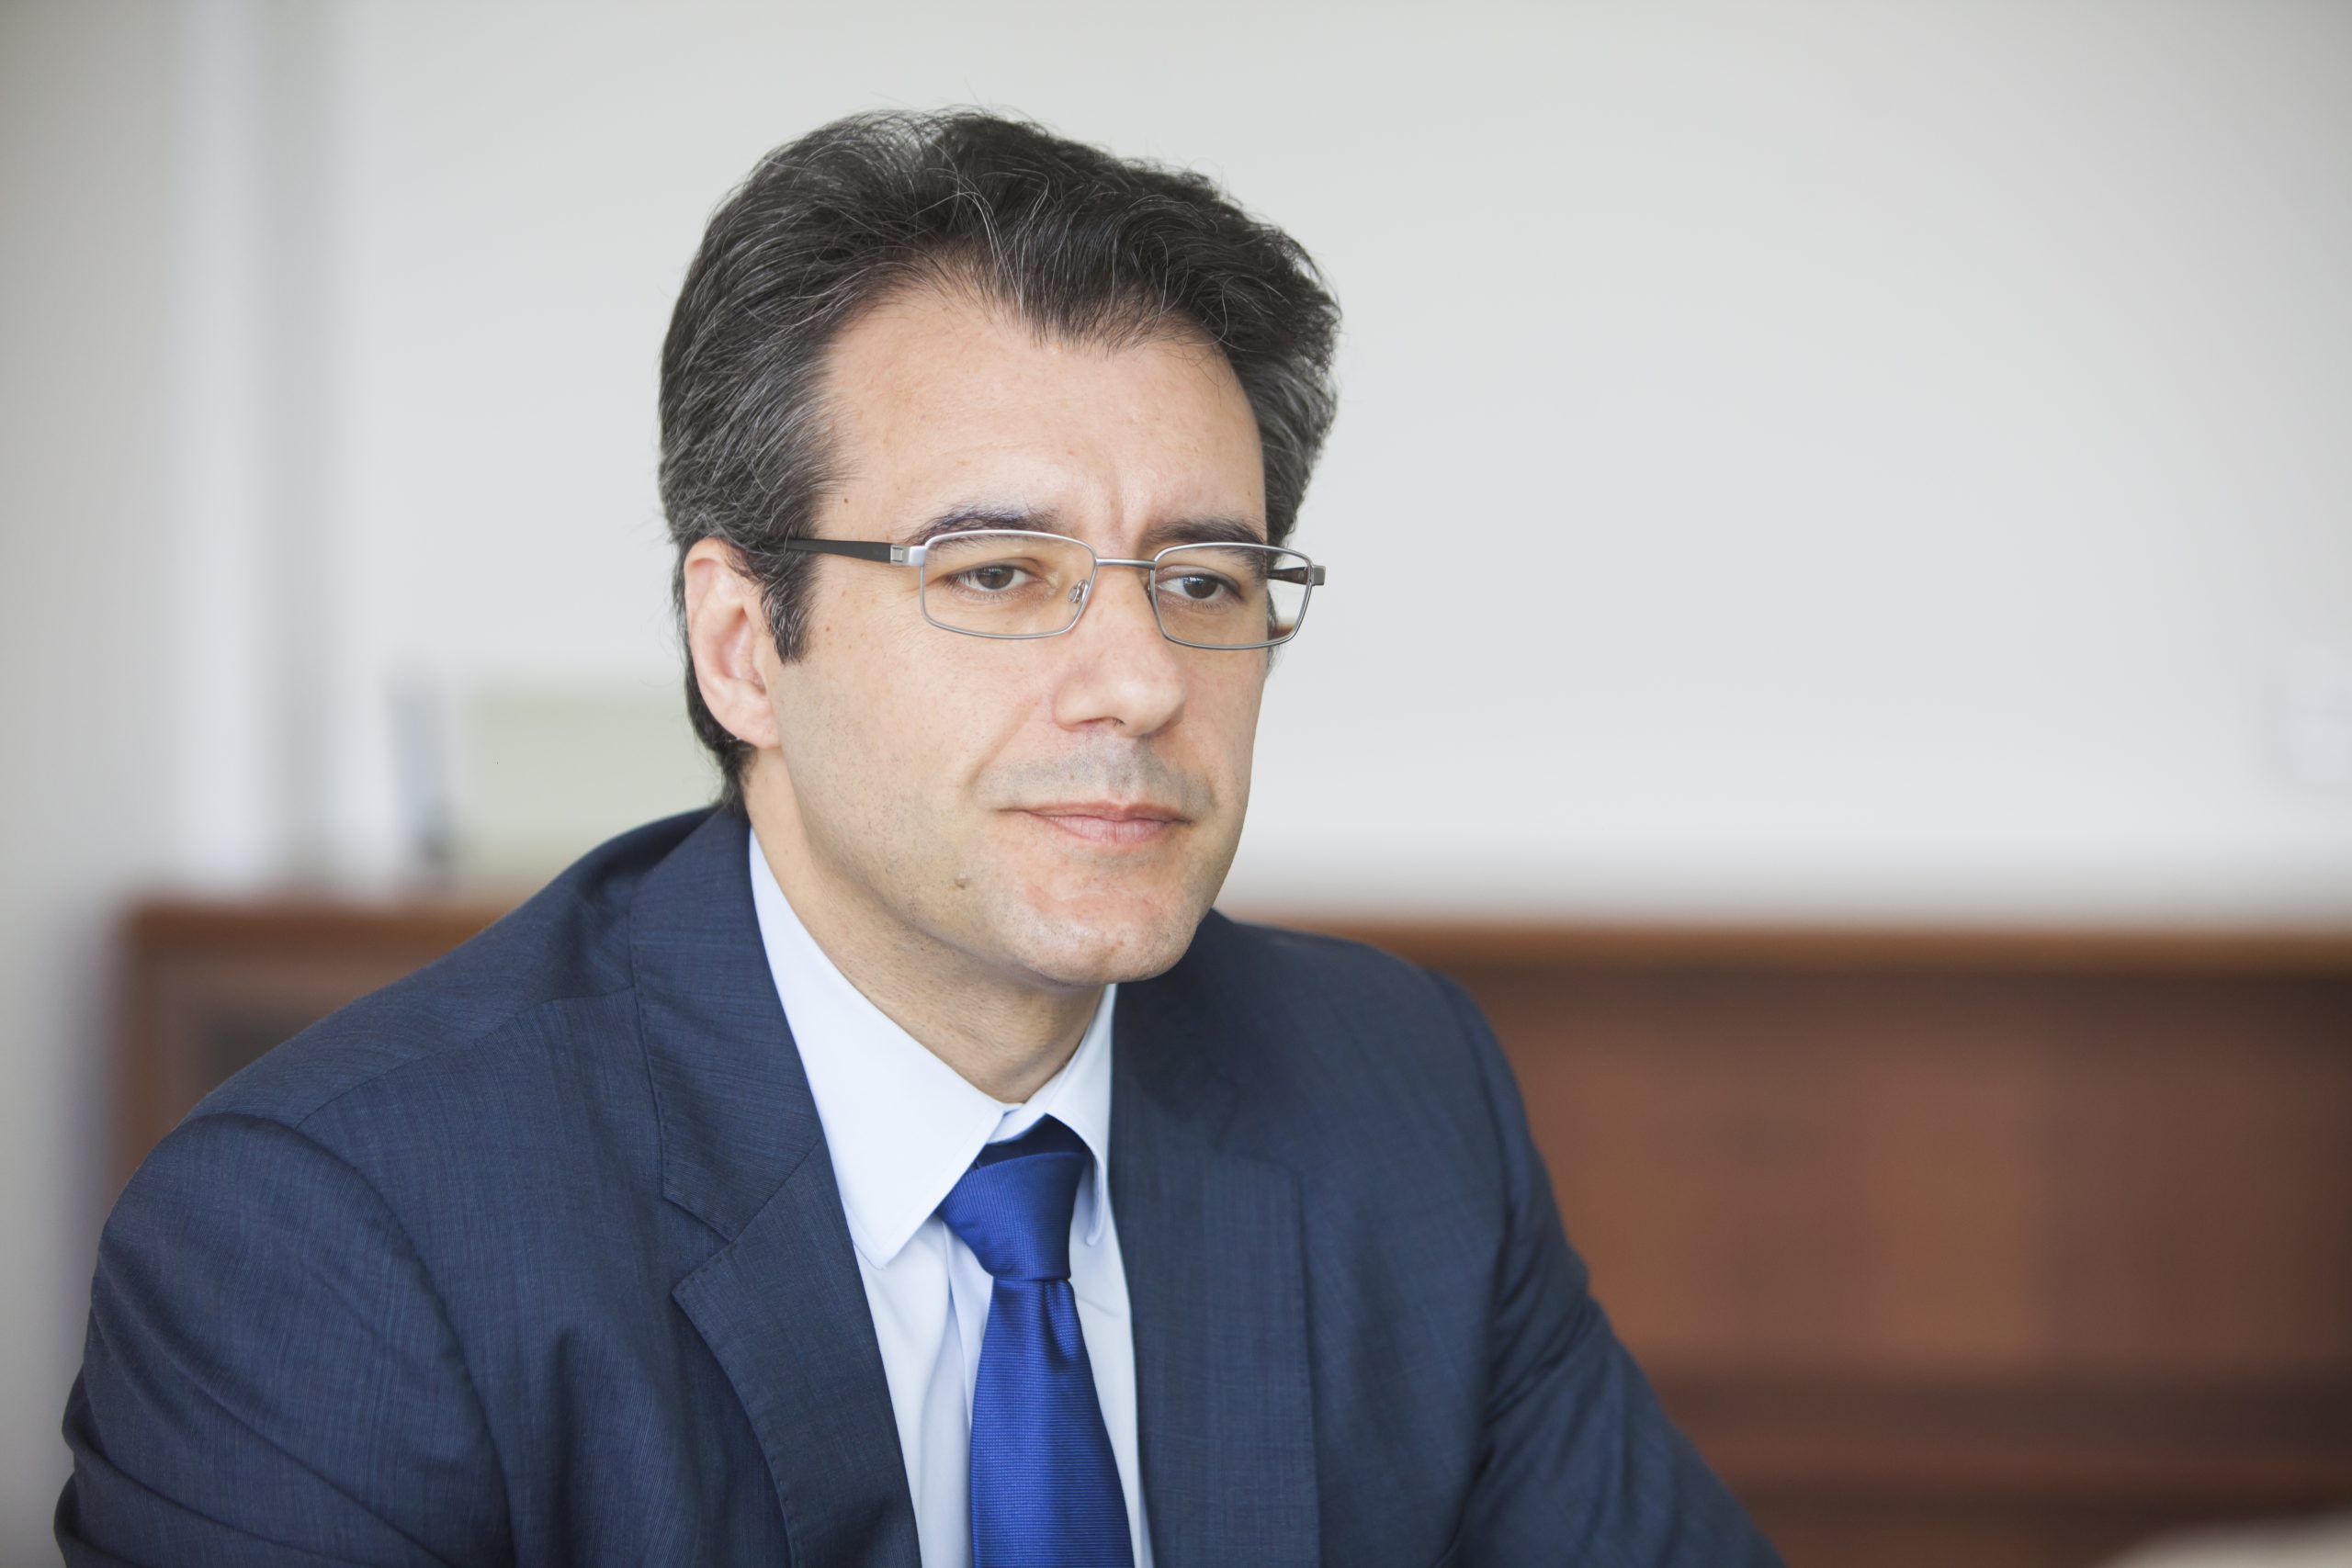 Advogados. Presidente do Conselho Regional de Lisboa acusa bastonário de oportunismo